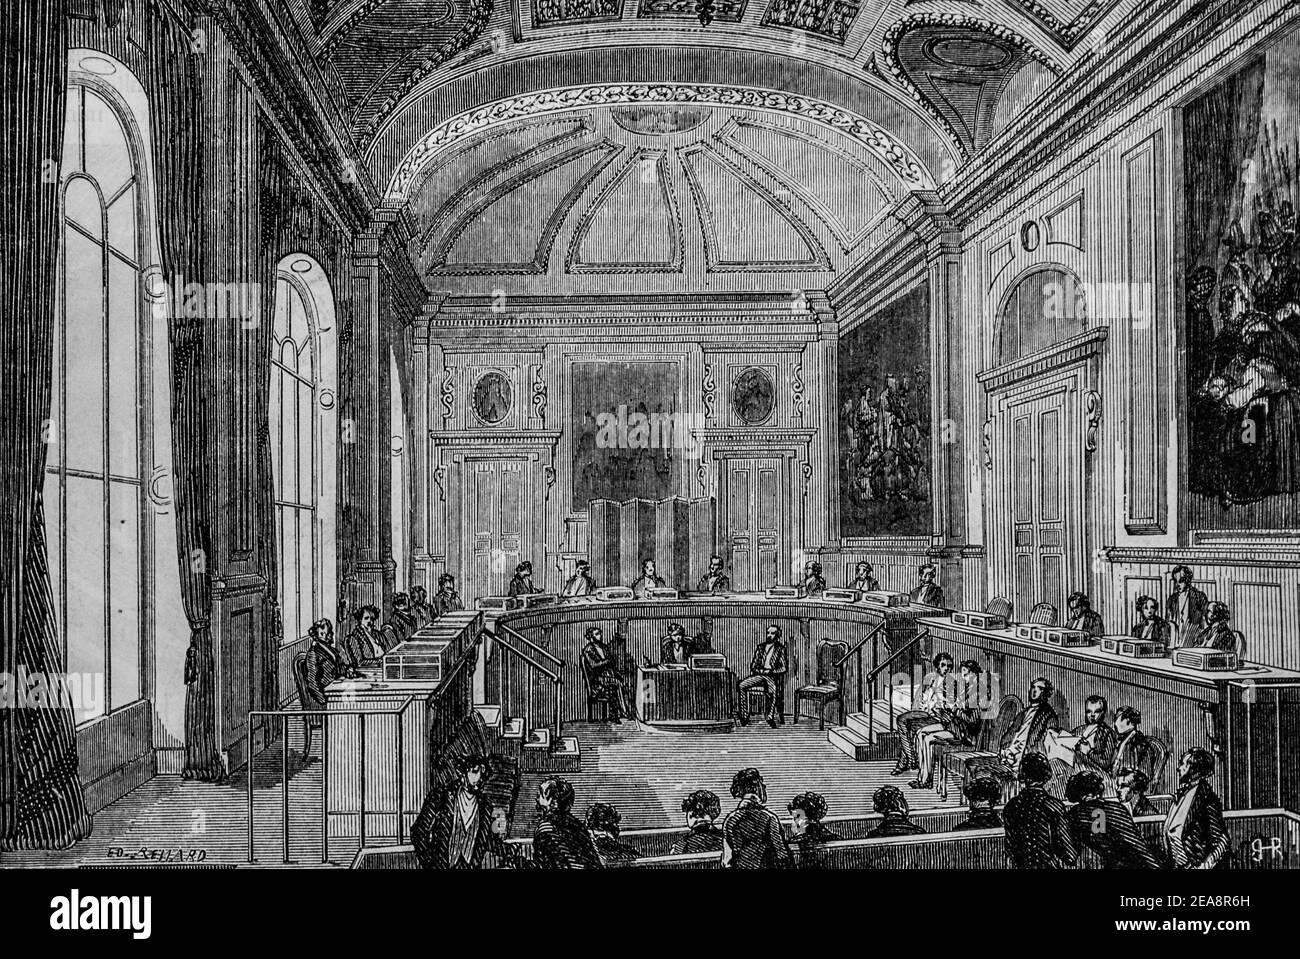 conseil d'etat, tableau de paris par edmond texier,éditeur paulin et le chevalier 1852 Banque D'Images